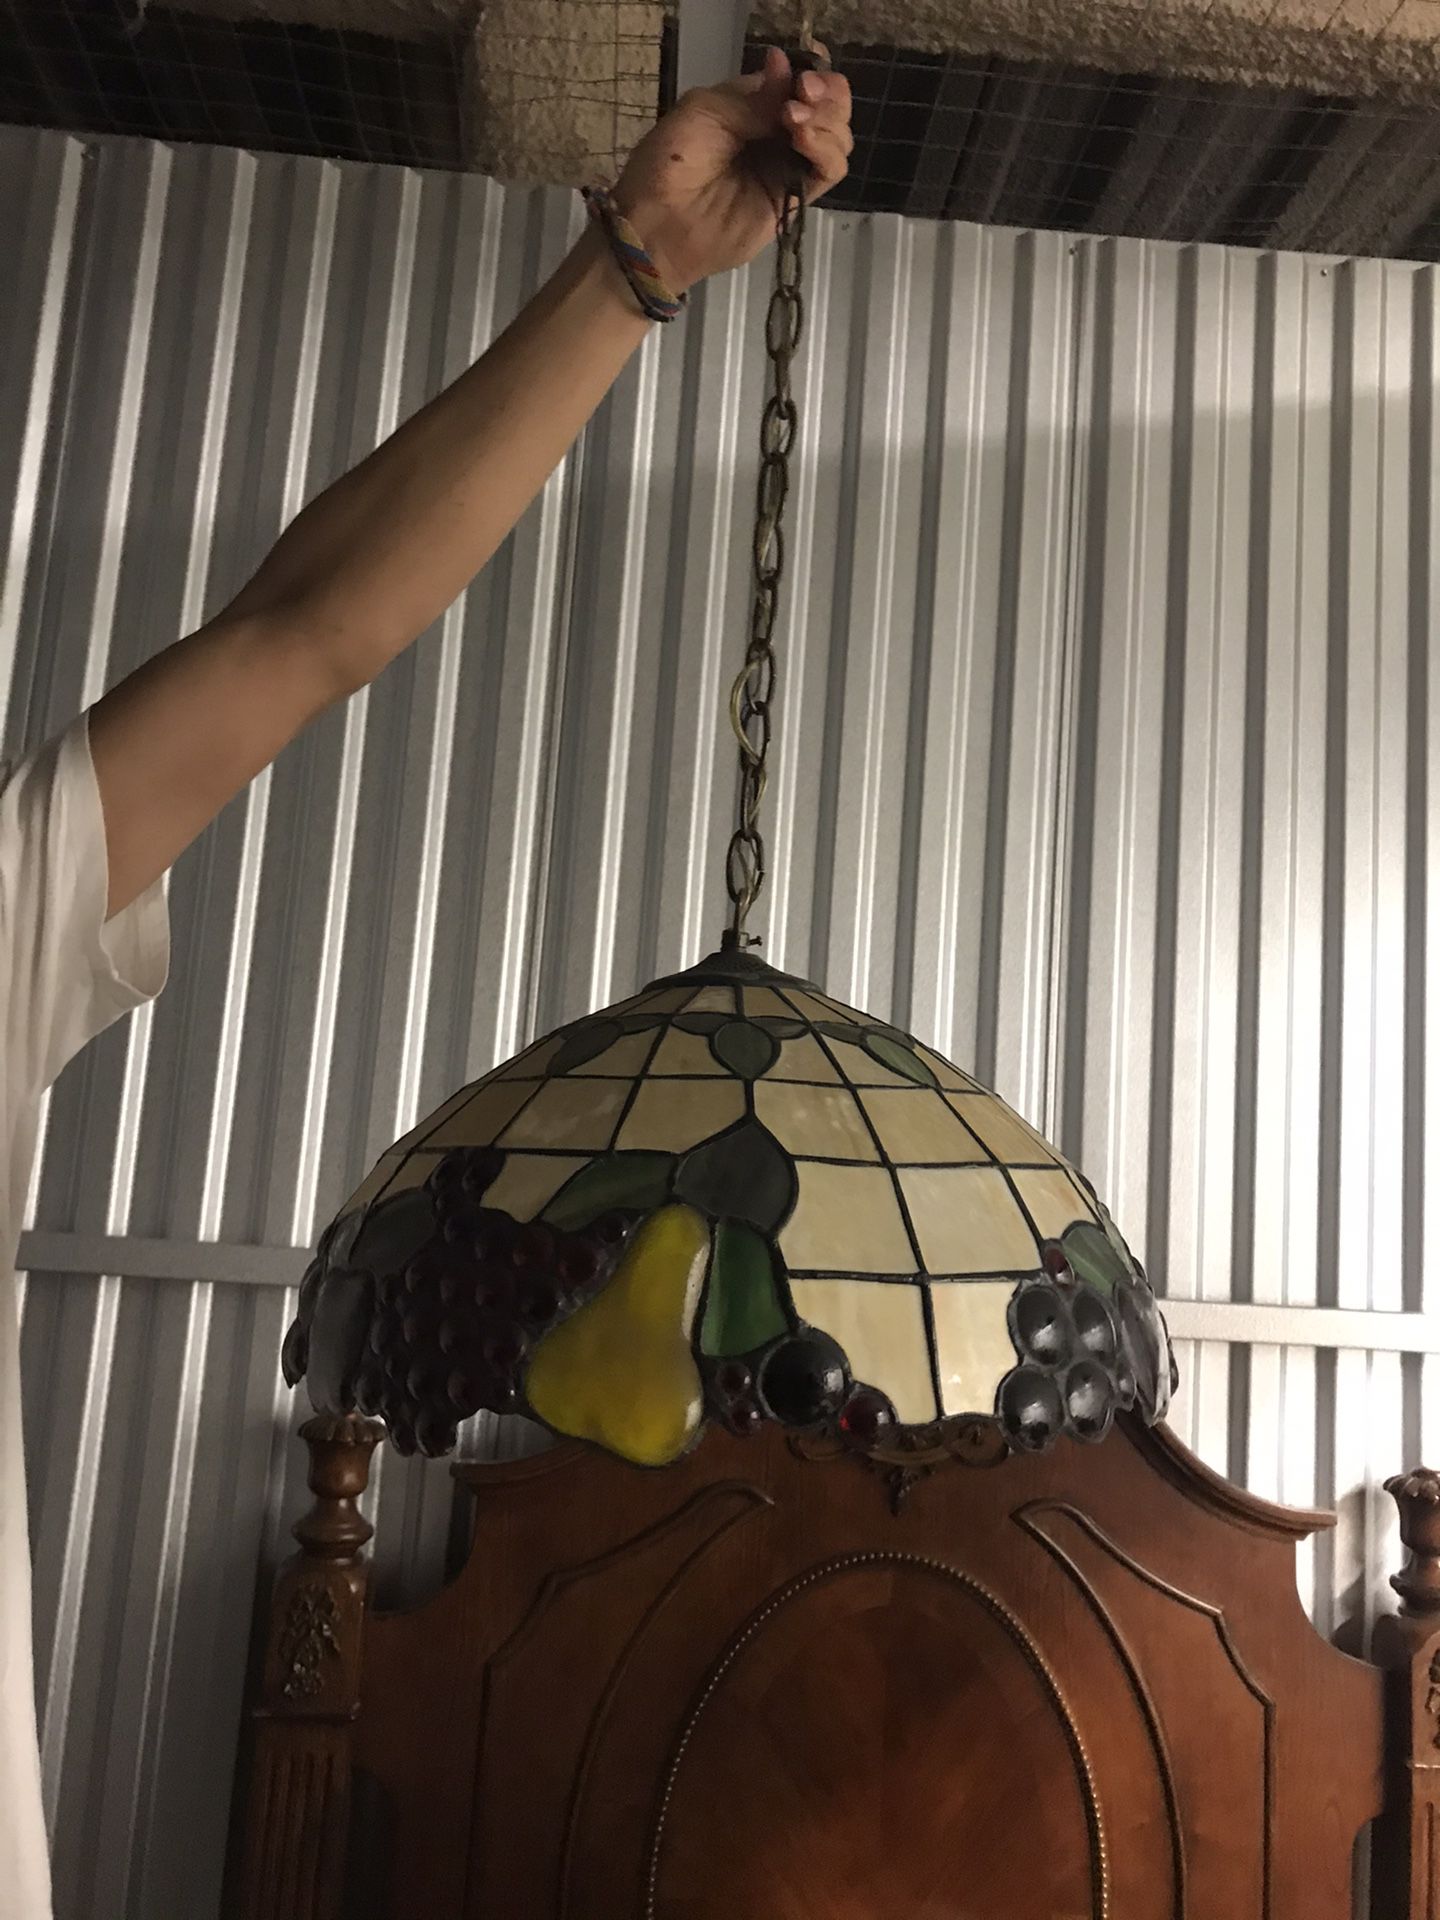 Vintage hanging lamp